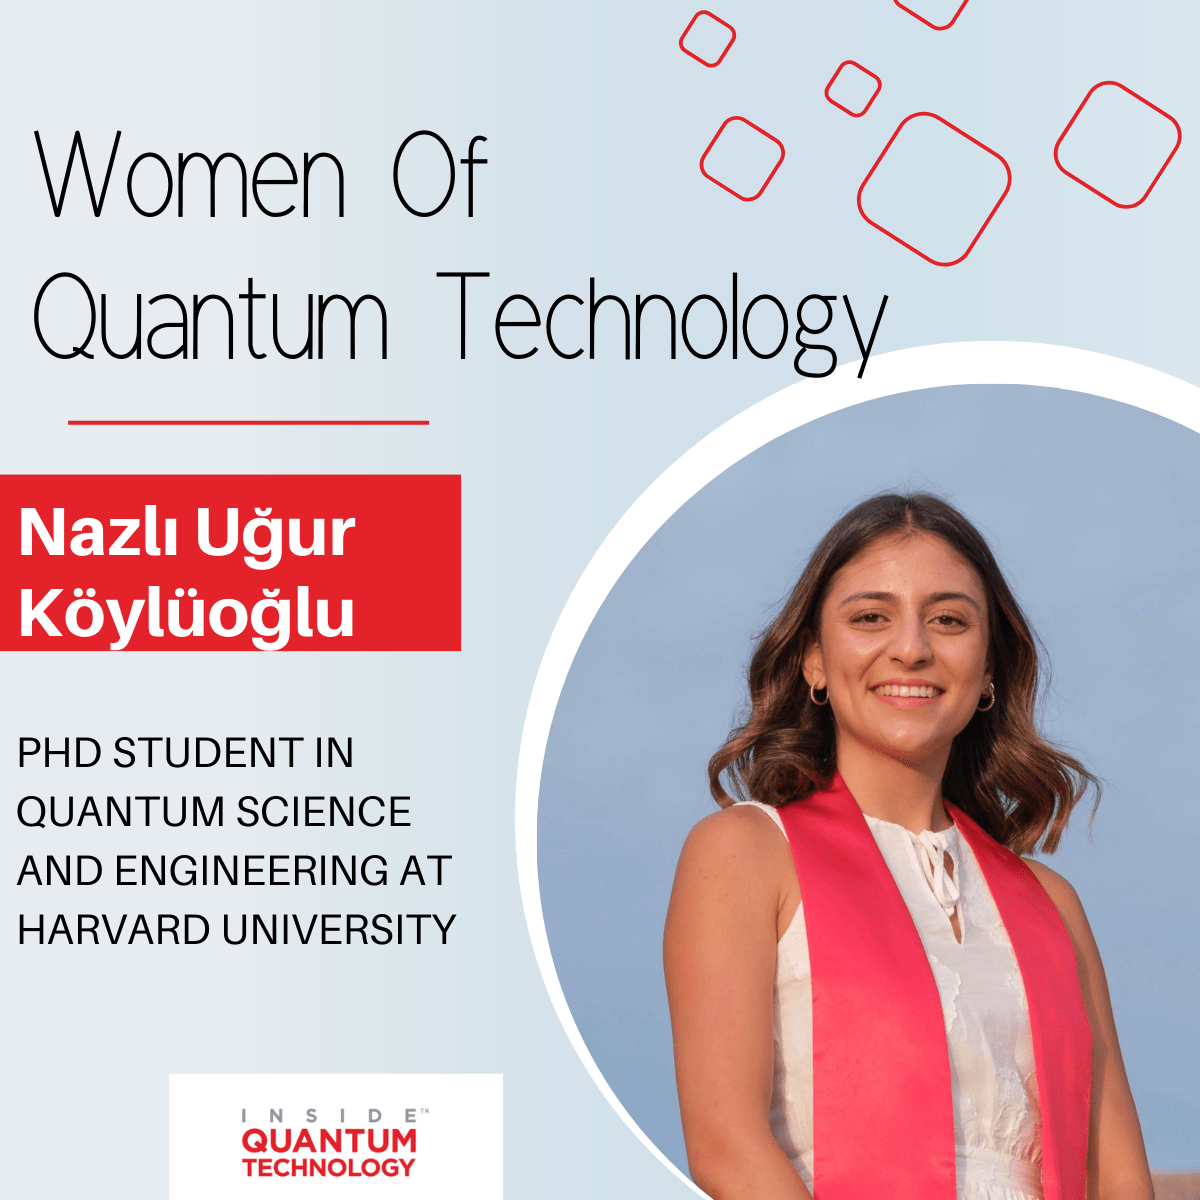 Vrouwen in de kwantumtechnologie: Nazlı Uğur Köylüoğlu van de Harvard Universiteit - Inside Quantum Technology